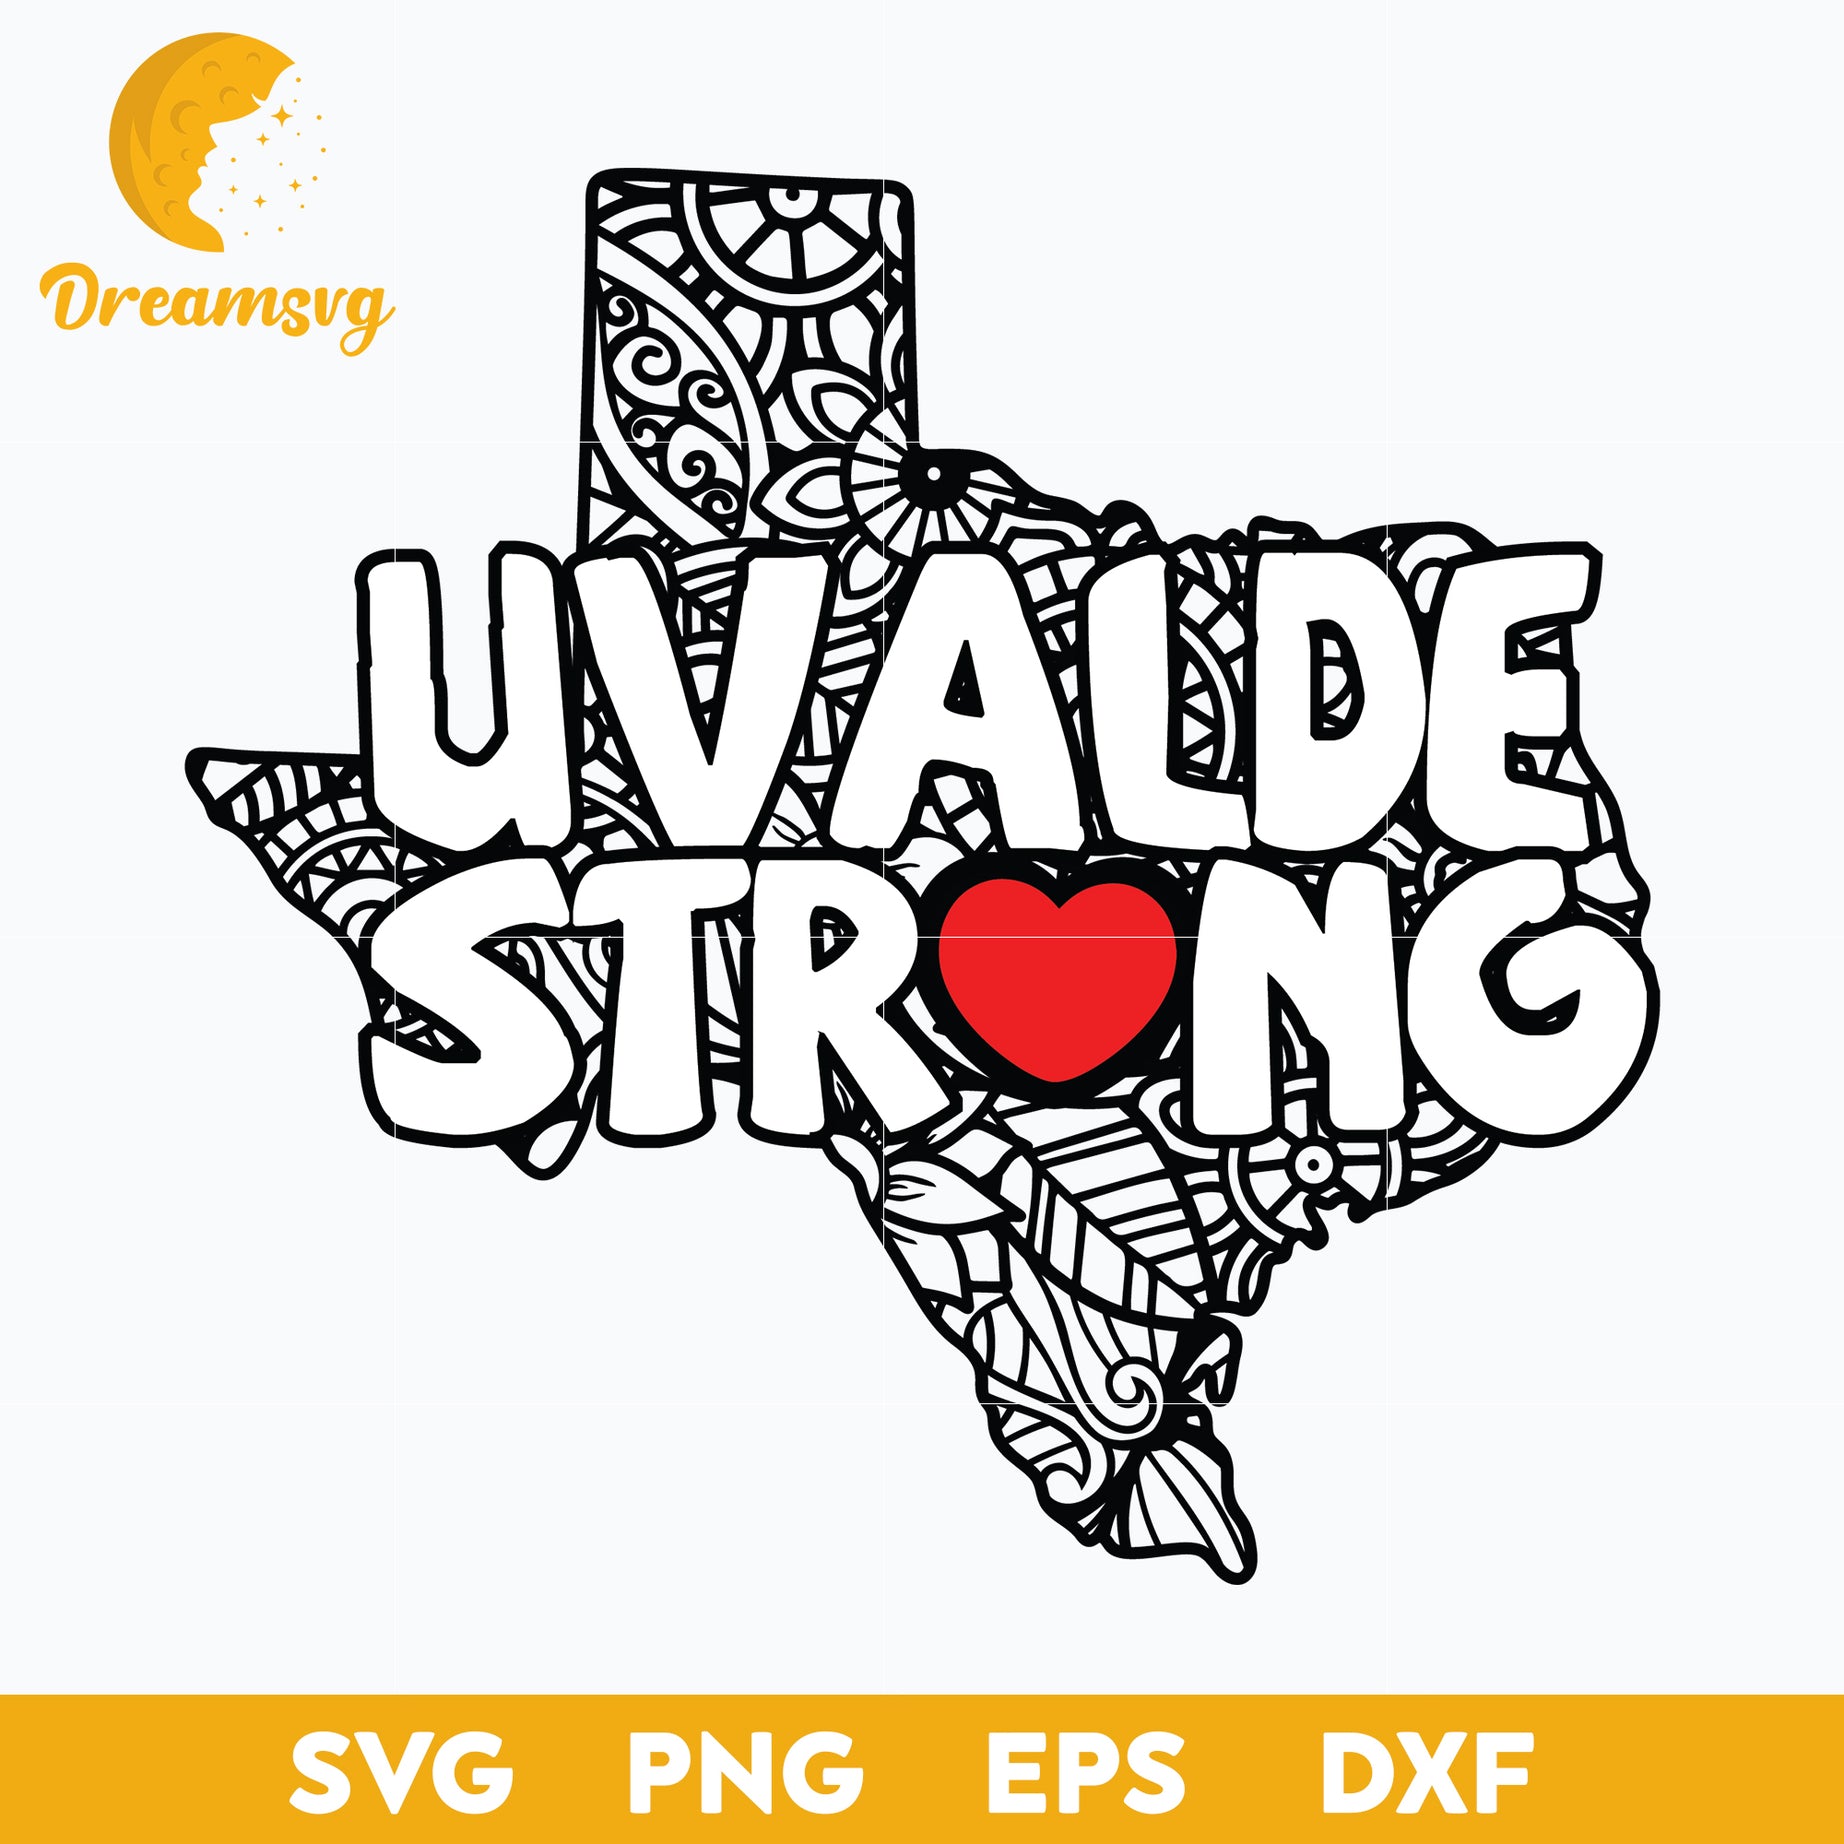 Uvalde Strong Svg, Uvalde Svg, Pray For Uvalde Svg, Uvalde Texas Svg, Pray For Texas Svg, Png, Dxf, Eps Digital File.